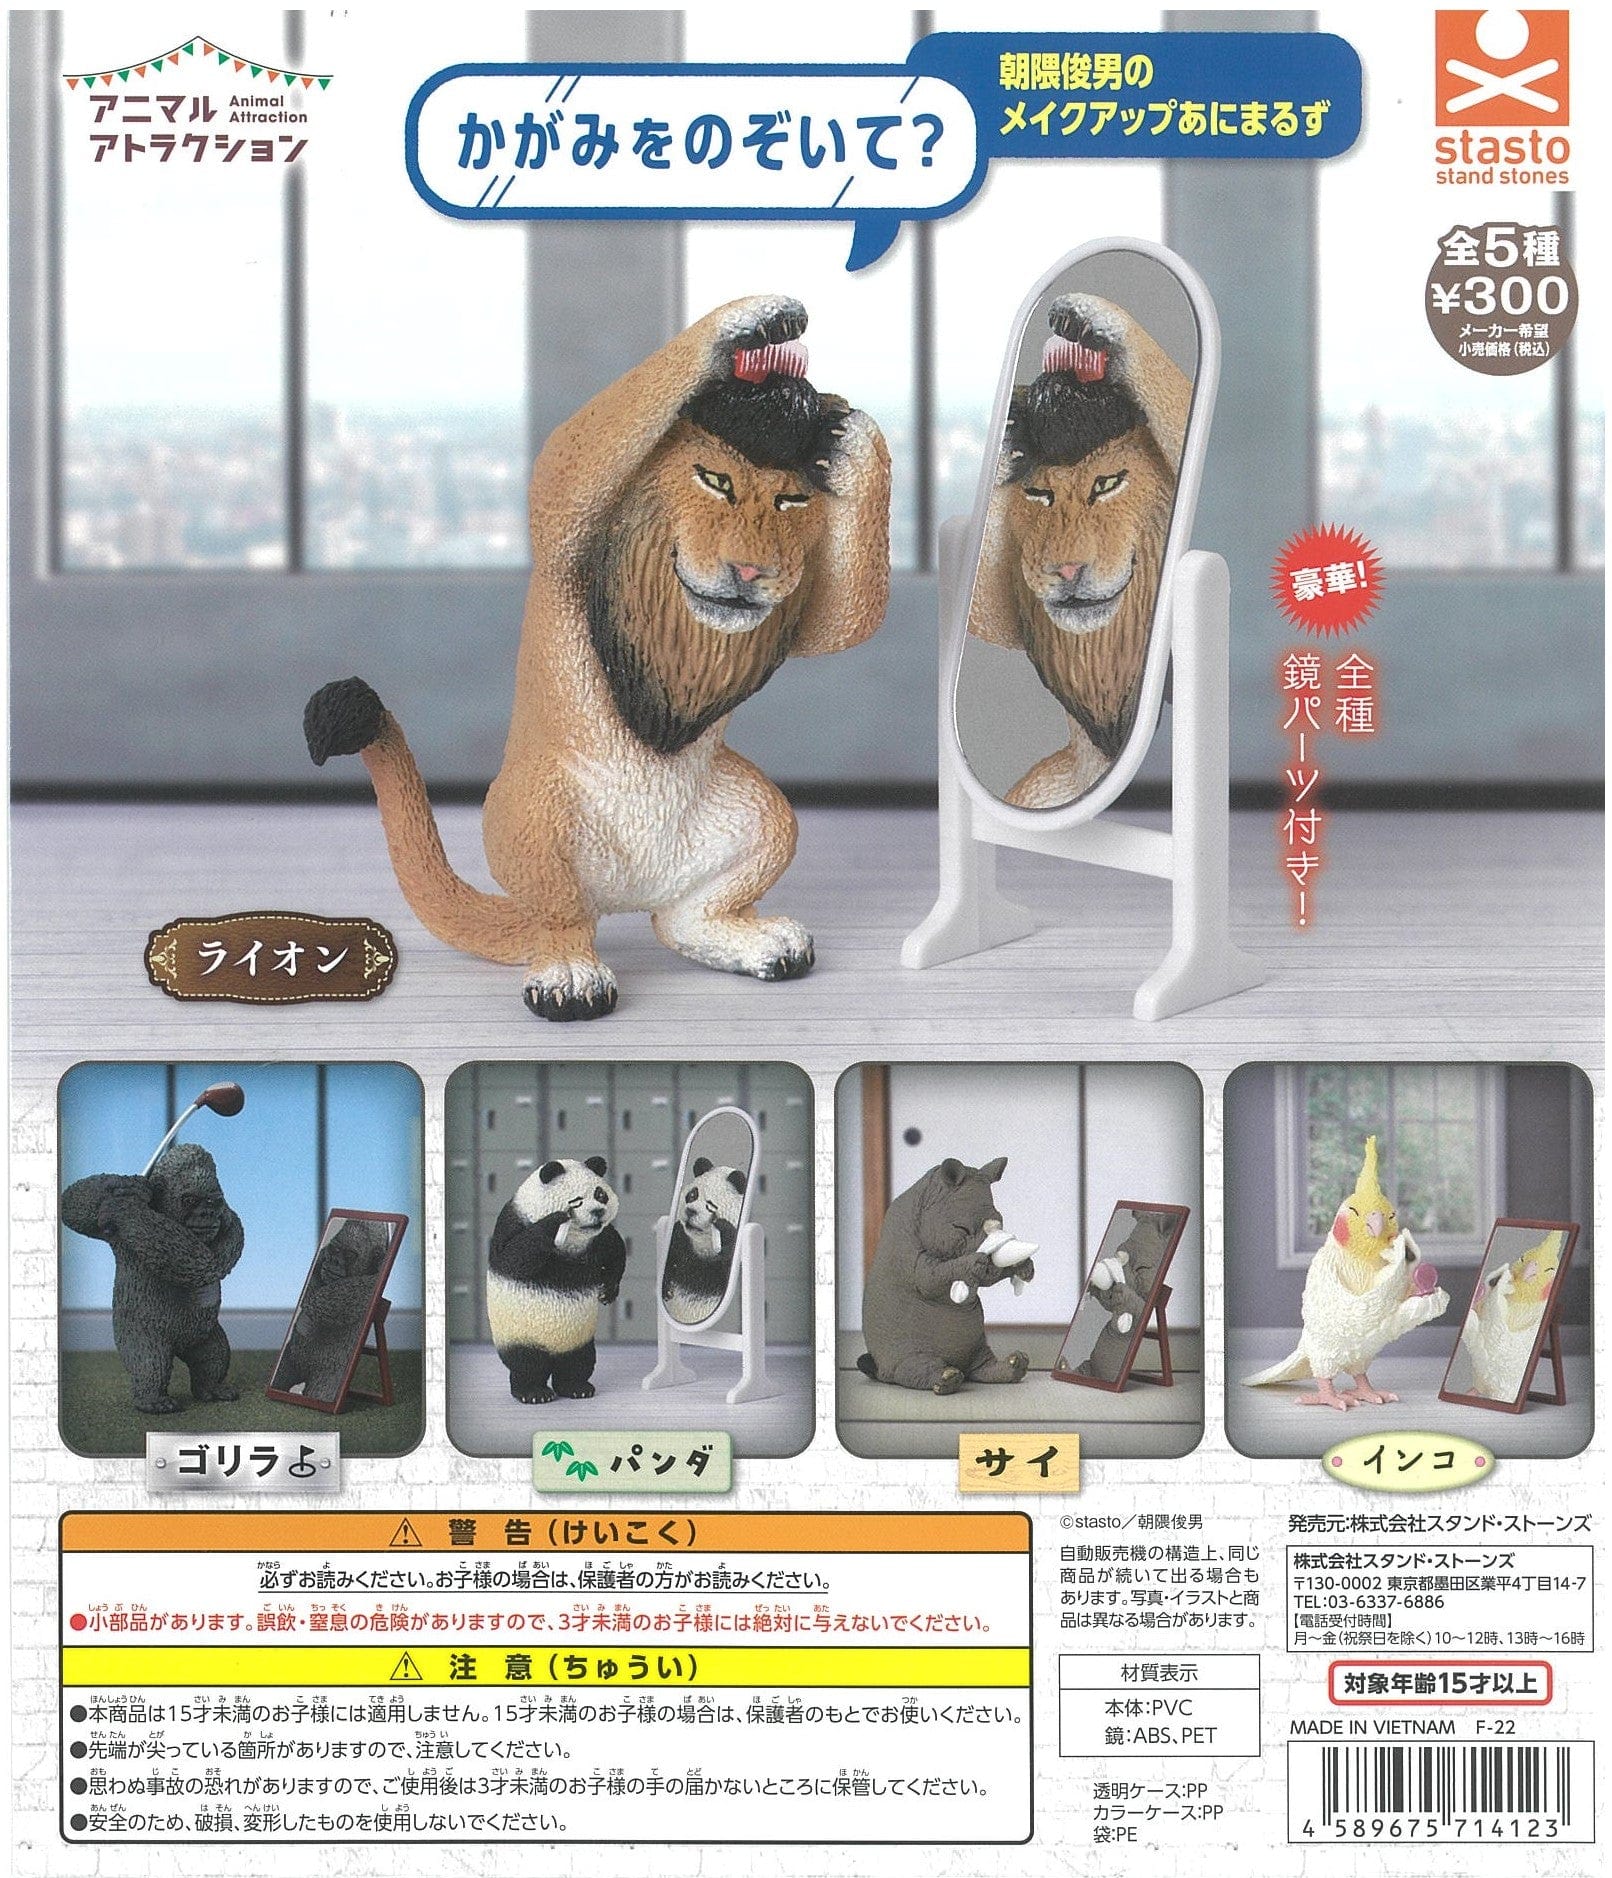 Statso CP1750 Animal Attraction Kagami wo Nozoite? Toshio Asakuma no Makeup Animals